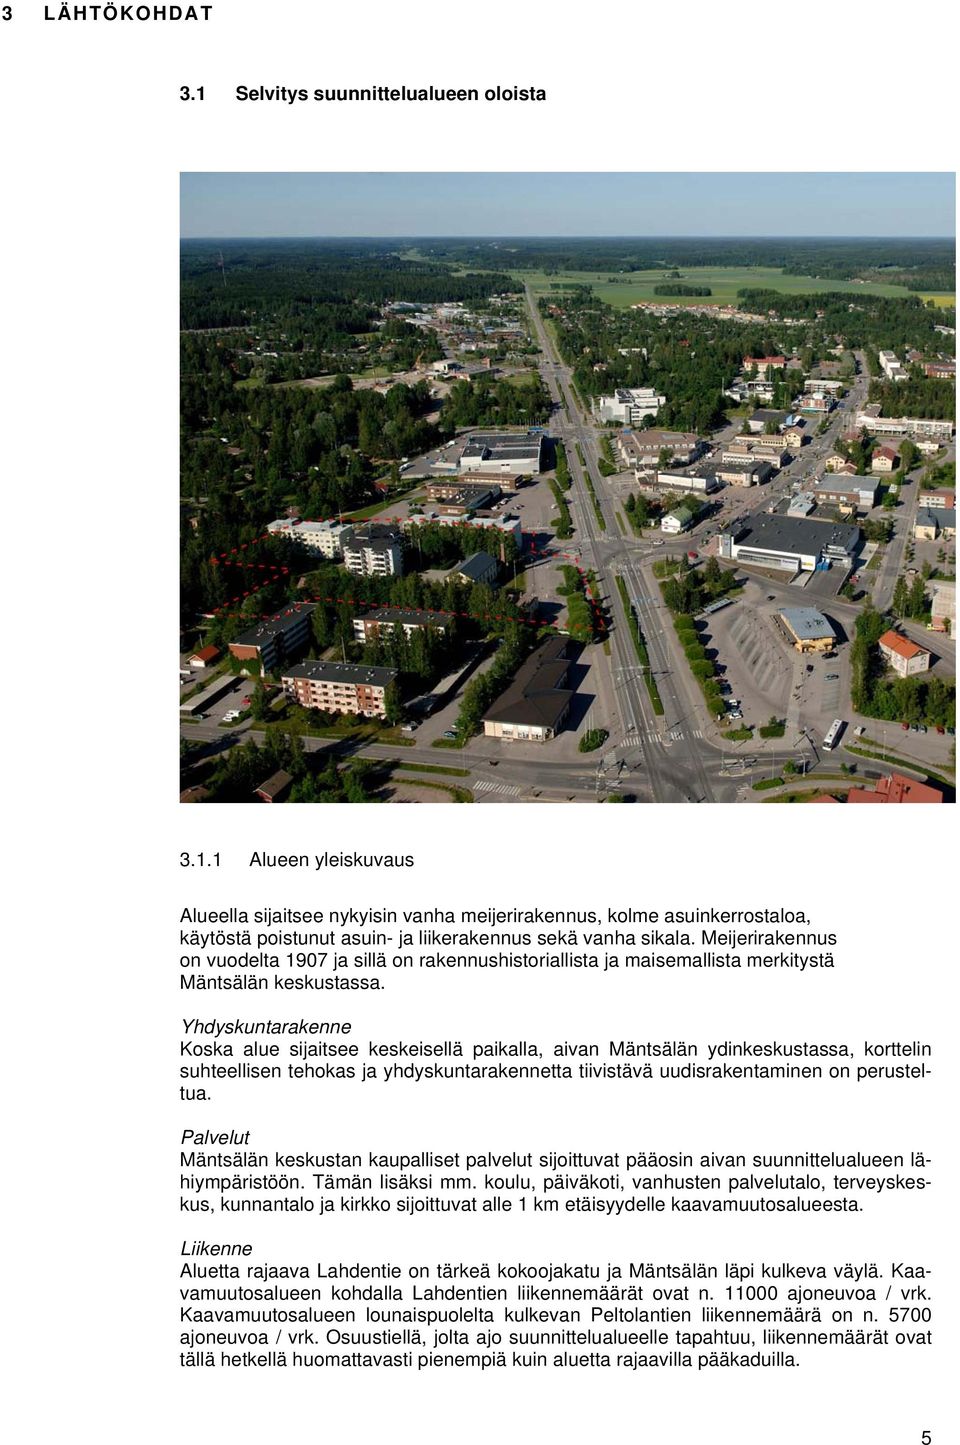 Yhdyskuntarakenne Koska alue sijaitsee keskeisellä paikalla, aivan Mäntsälän ydinkeskustassa, korttelin suhteellisen tehokas ja yhdyskuntarakennetta tiivistävä uudisrakentaminen on perusteltua.